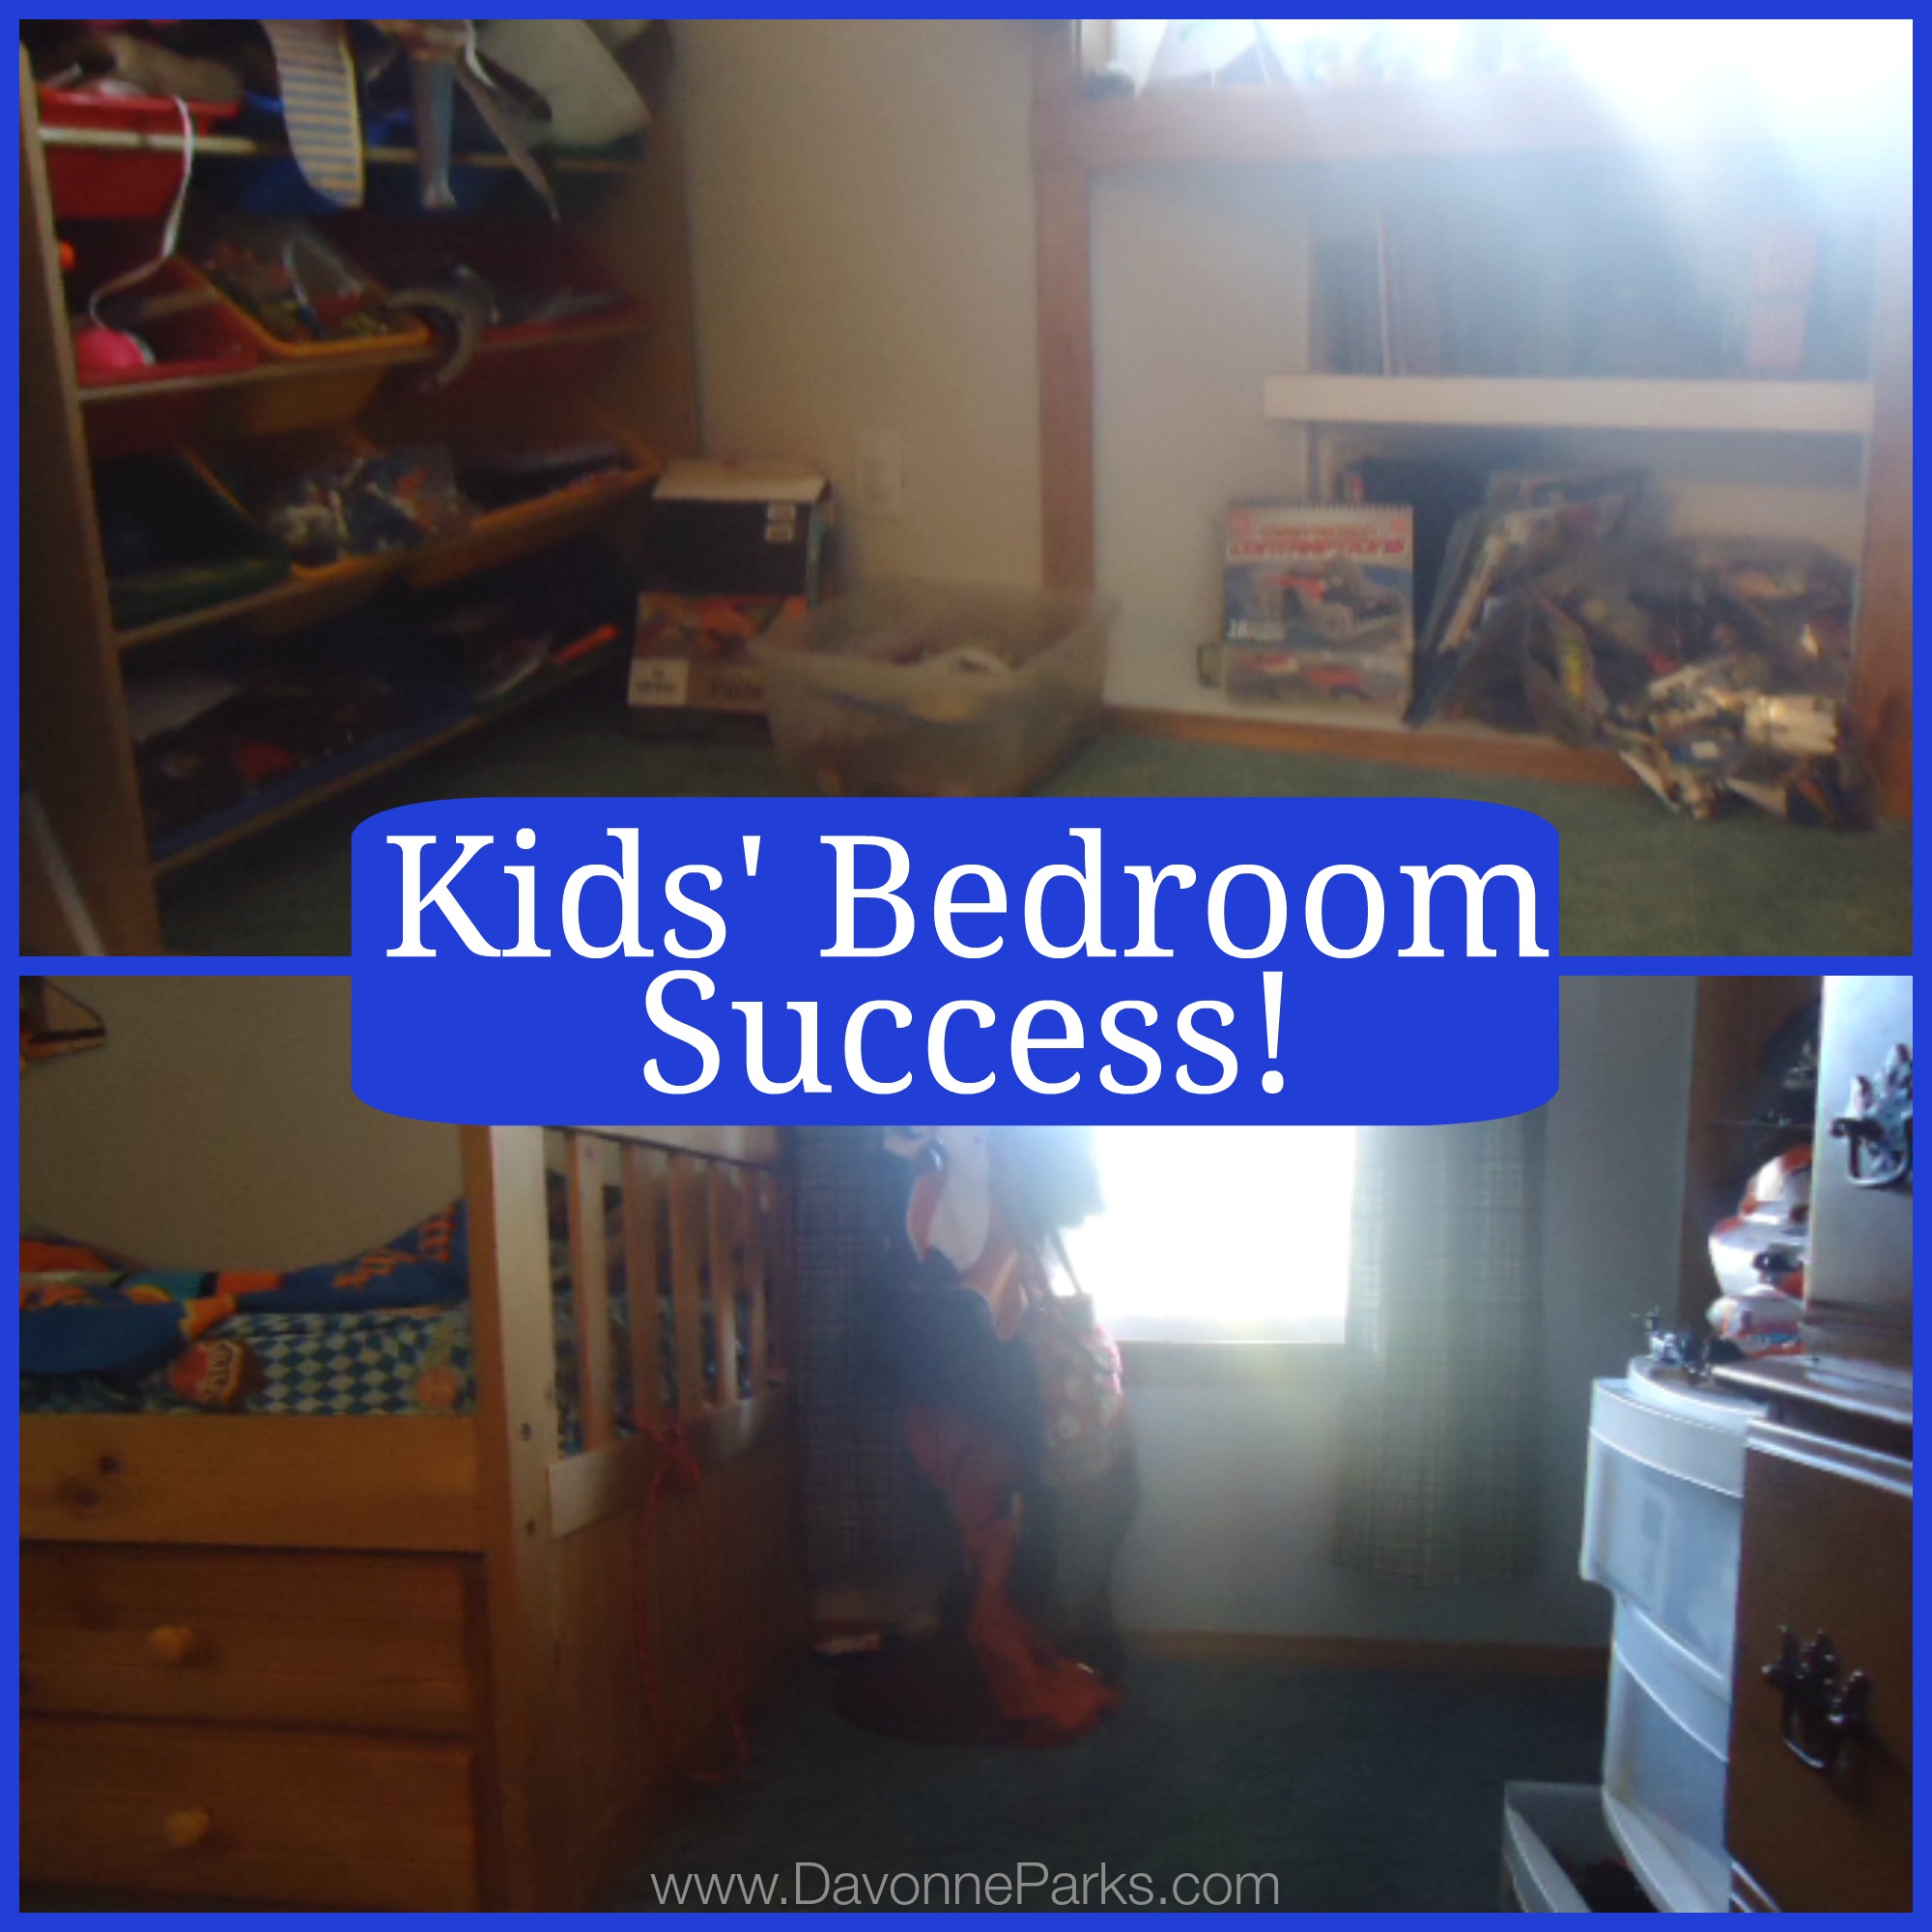 Kids’ Bedroom Success!